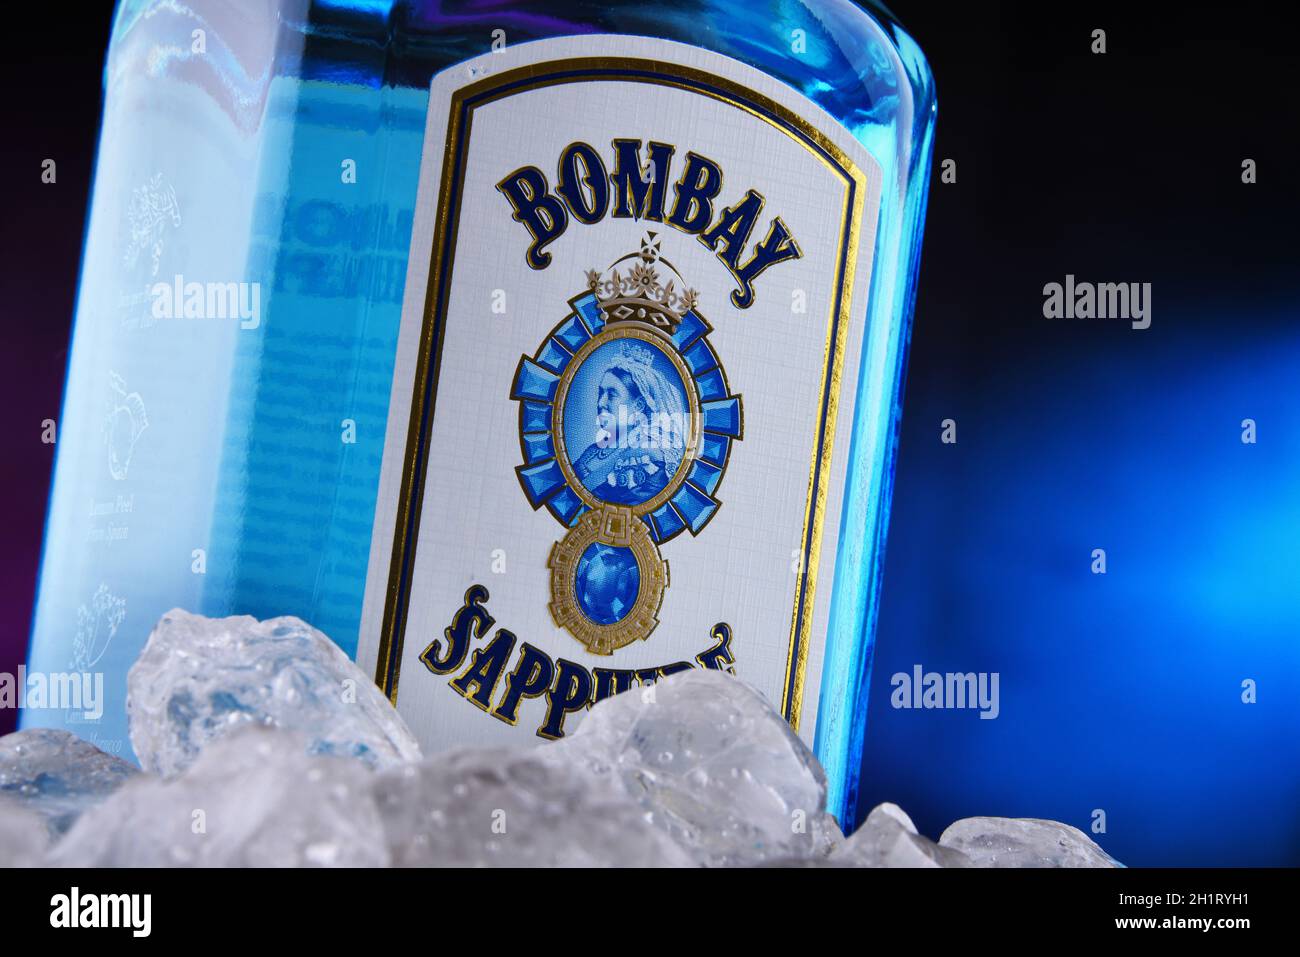 POZNAN, POL - JAN 22, 2021: Flasche Bombay Sapphire, eine Marke von Gin vertrieben von Bacardi. 1987 von International Destil auf den Markt gebracht Stockfoto